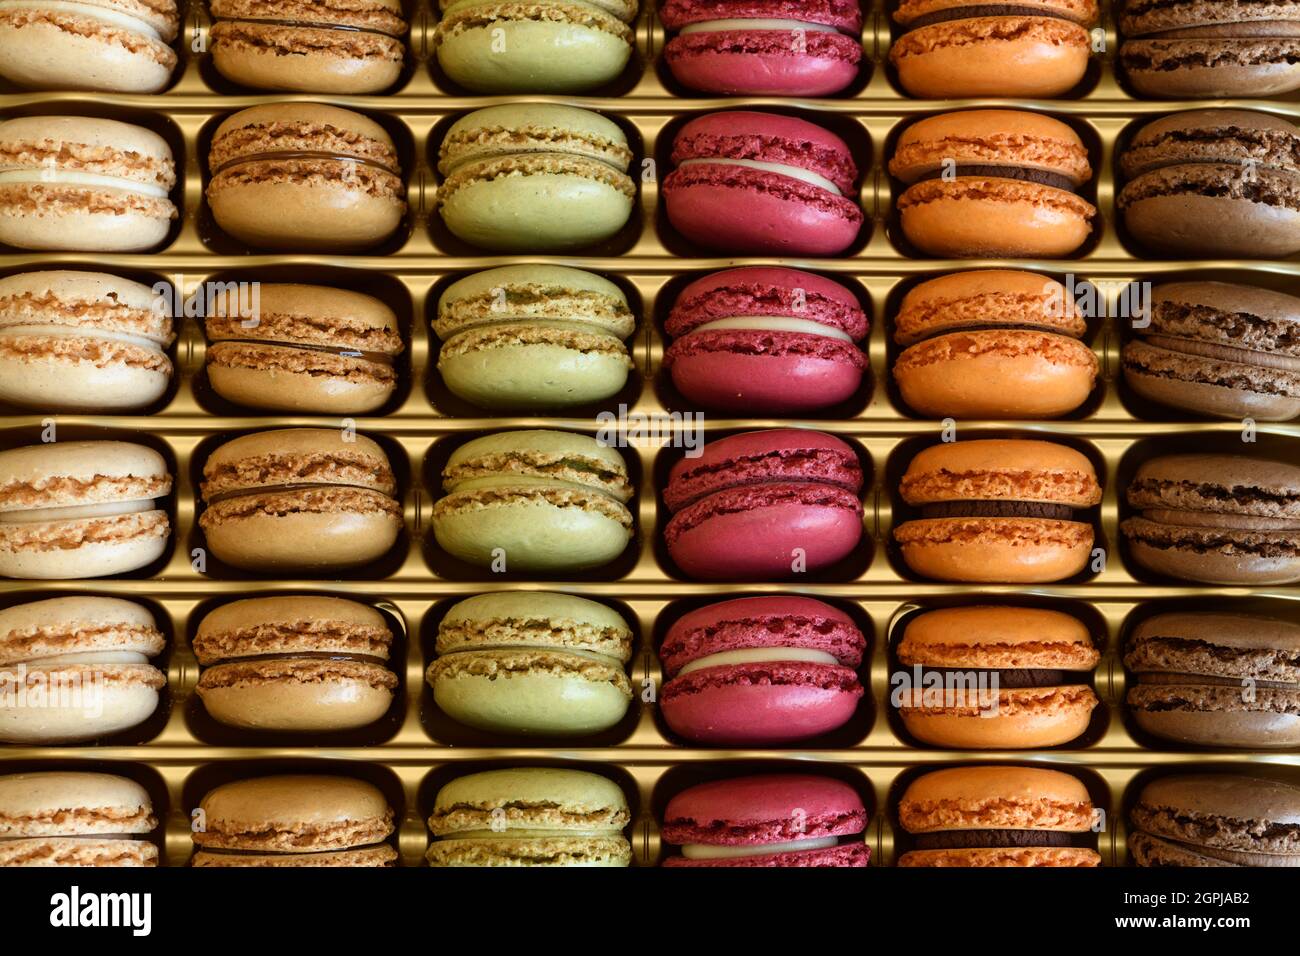 Colección de coloridos macarons franceses que son una dulce galleta de postre hecha de merengue y almendra Foto de stock